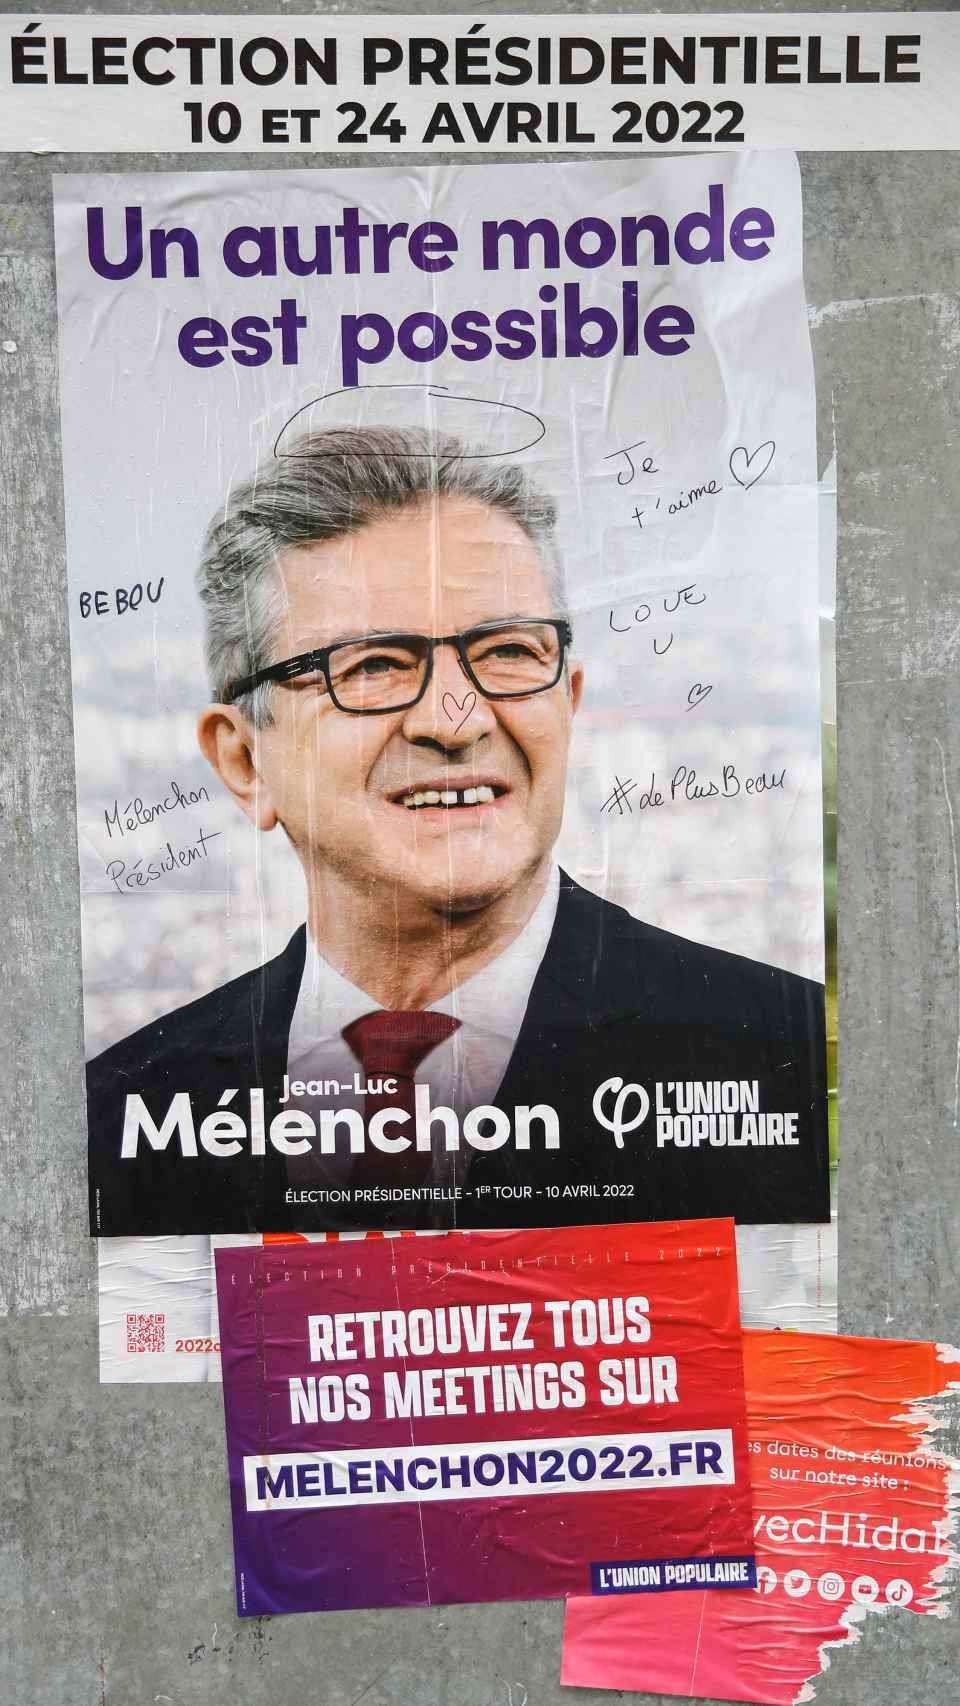 Jean-Luc Mélenchon's campaign poster.